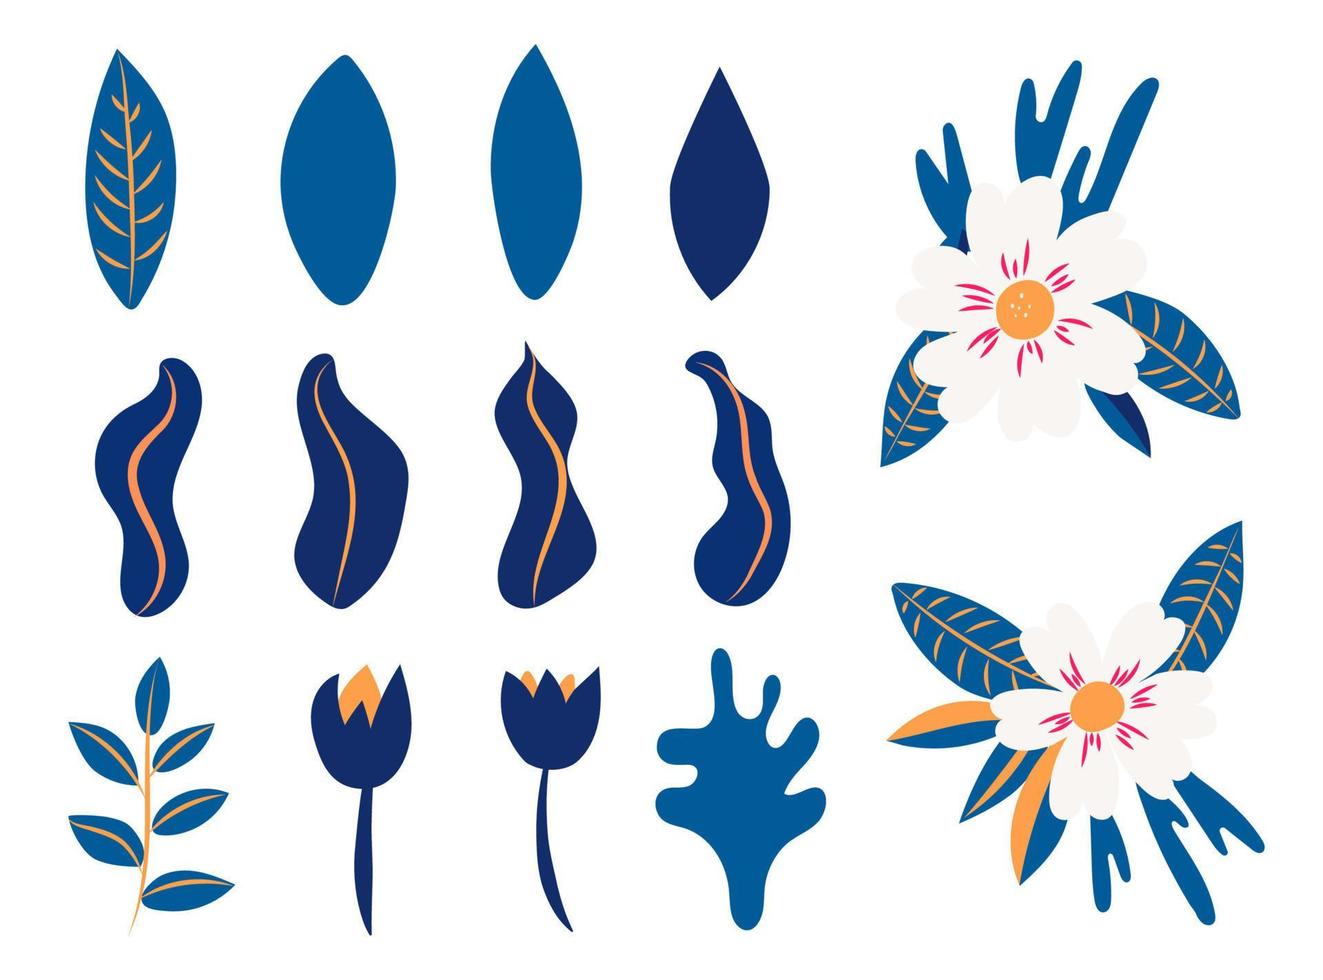 collectie van bloemen en bladeren van bloemen. vector blauwe en witte bloemen. lentekunstposter met posters van botanische elementen voor de voorjaarsvakantie. pictogrammen gemarkeerd op een witte achtergrond